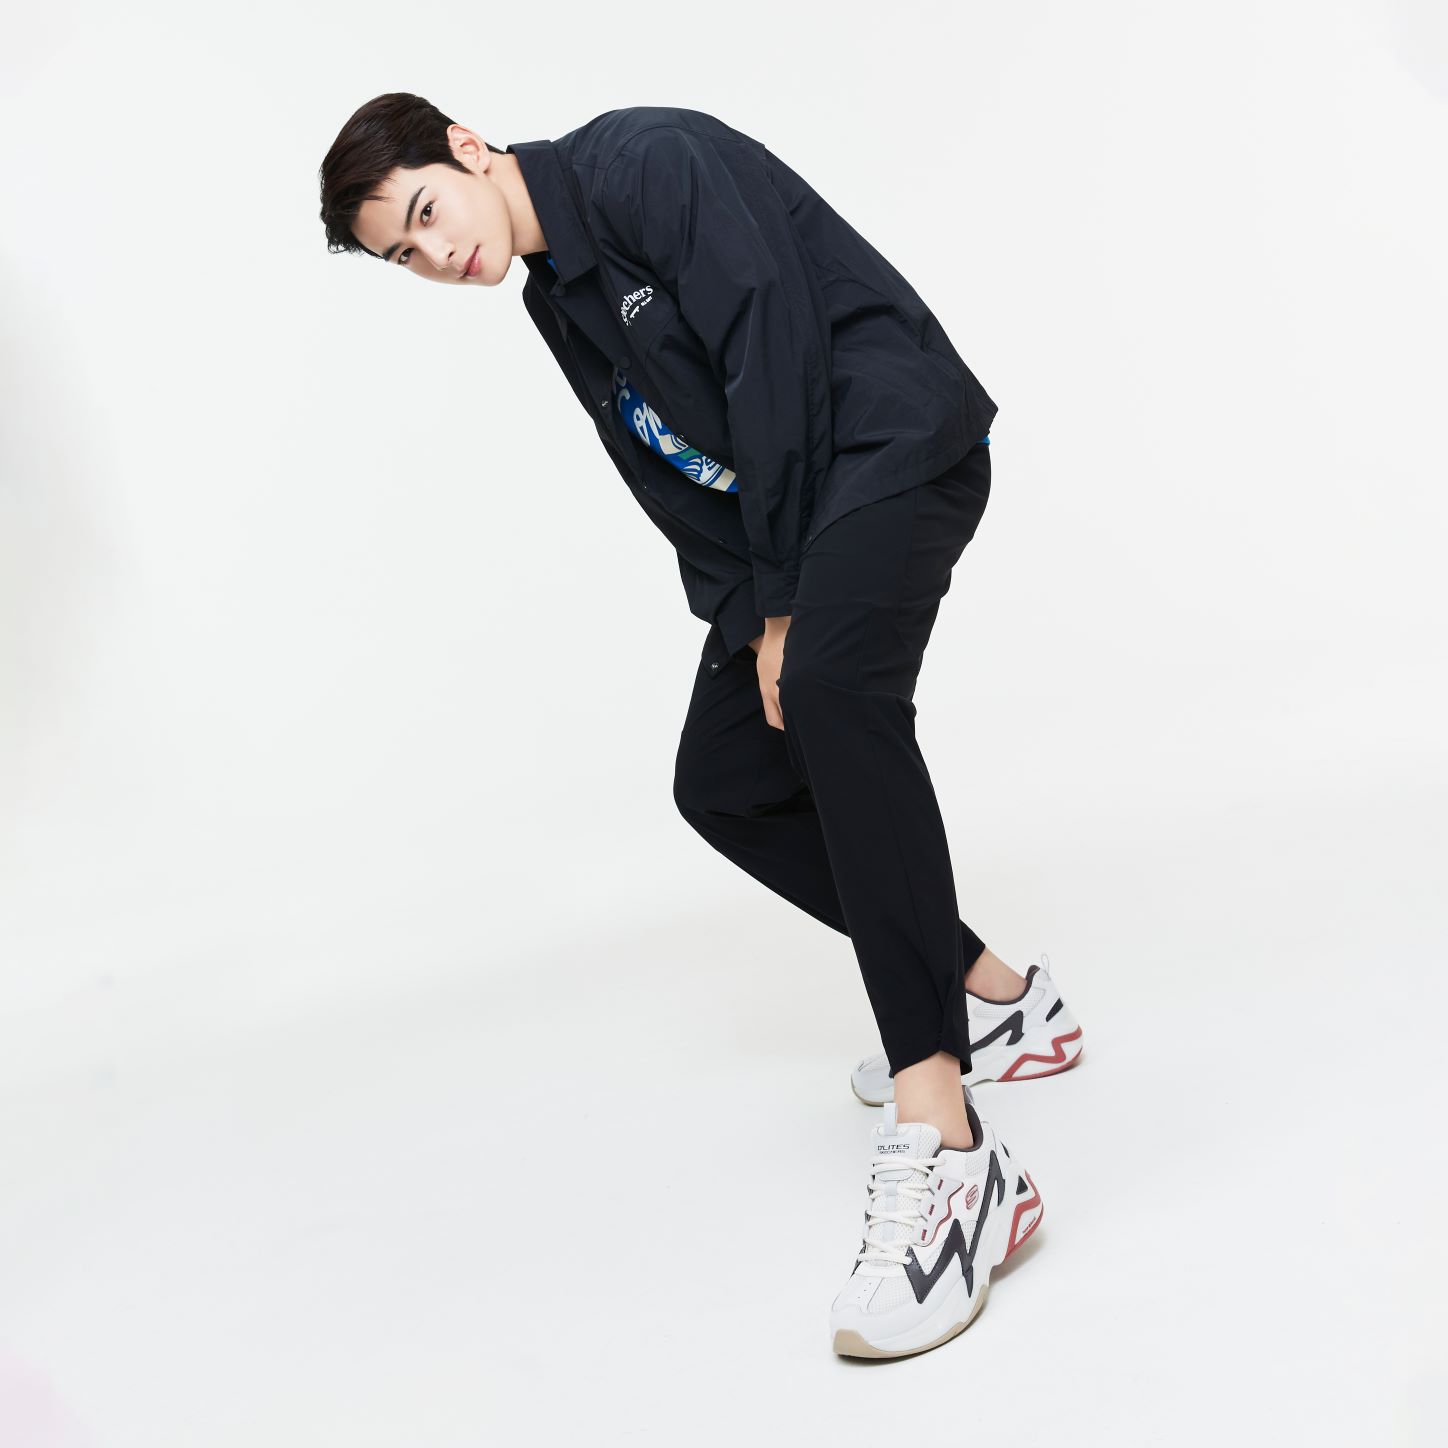 diefstal voorraad registreren Skechers Woos Top South Korean Pop Idol,Cha Eun-Woo, To Be Its New Regional Brand  Ambassador - Times Square Hong Kong